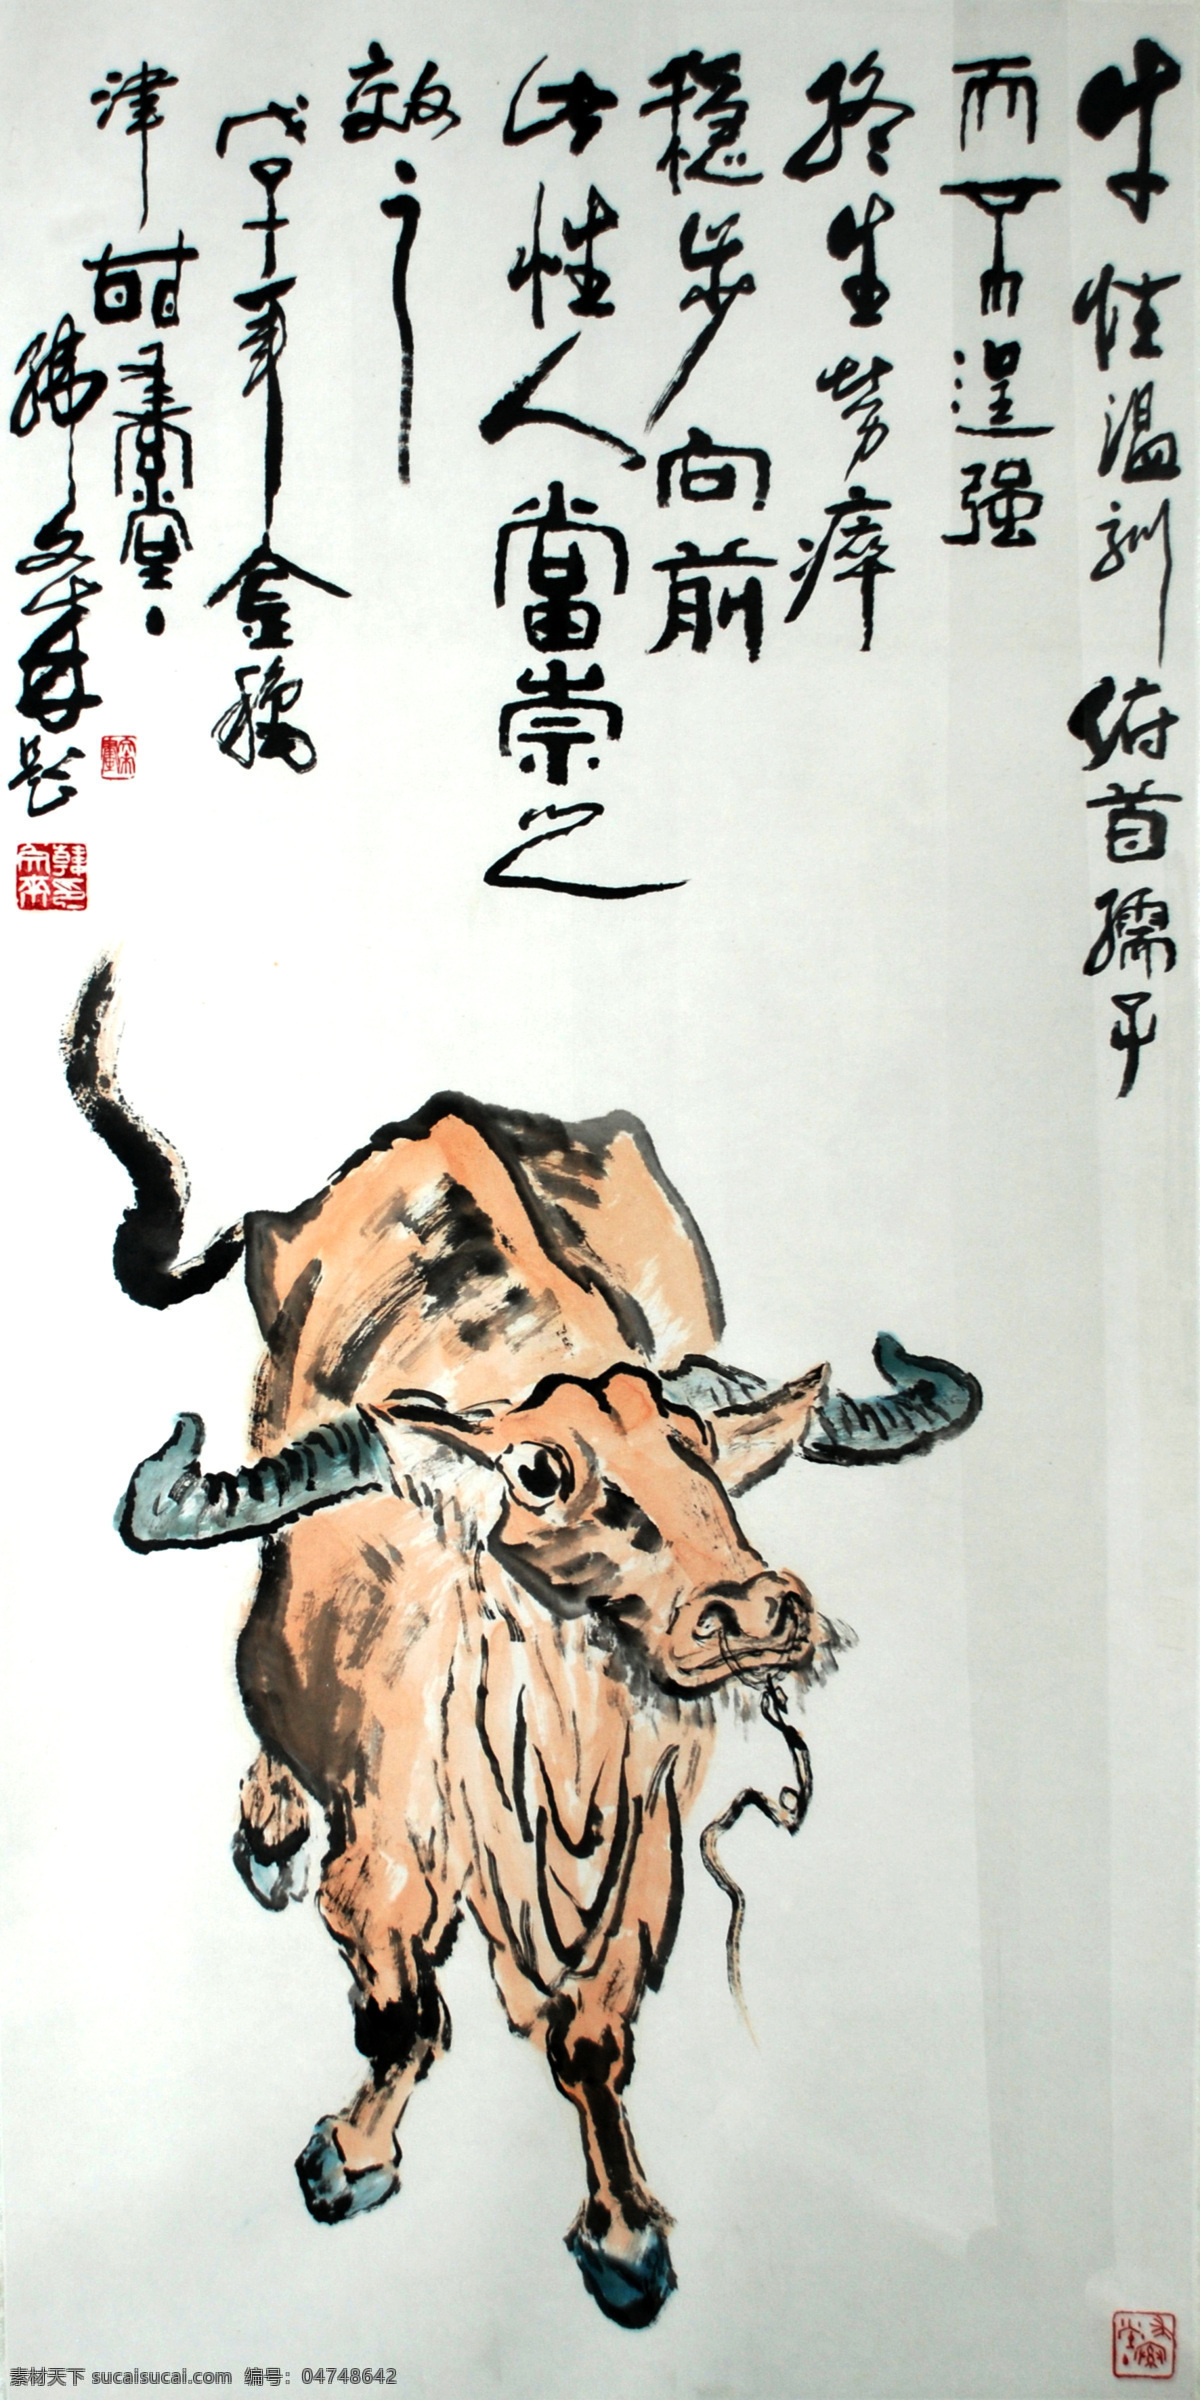 中国画 牛 中国元素 孺子牛 绘画元素 艺术 水墨画 中国风 国画 古典 古风 十二生肖 绘画书法 文化艺术